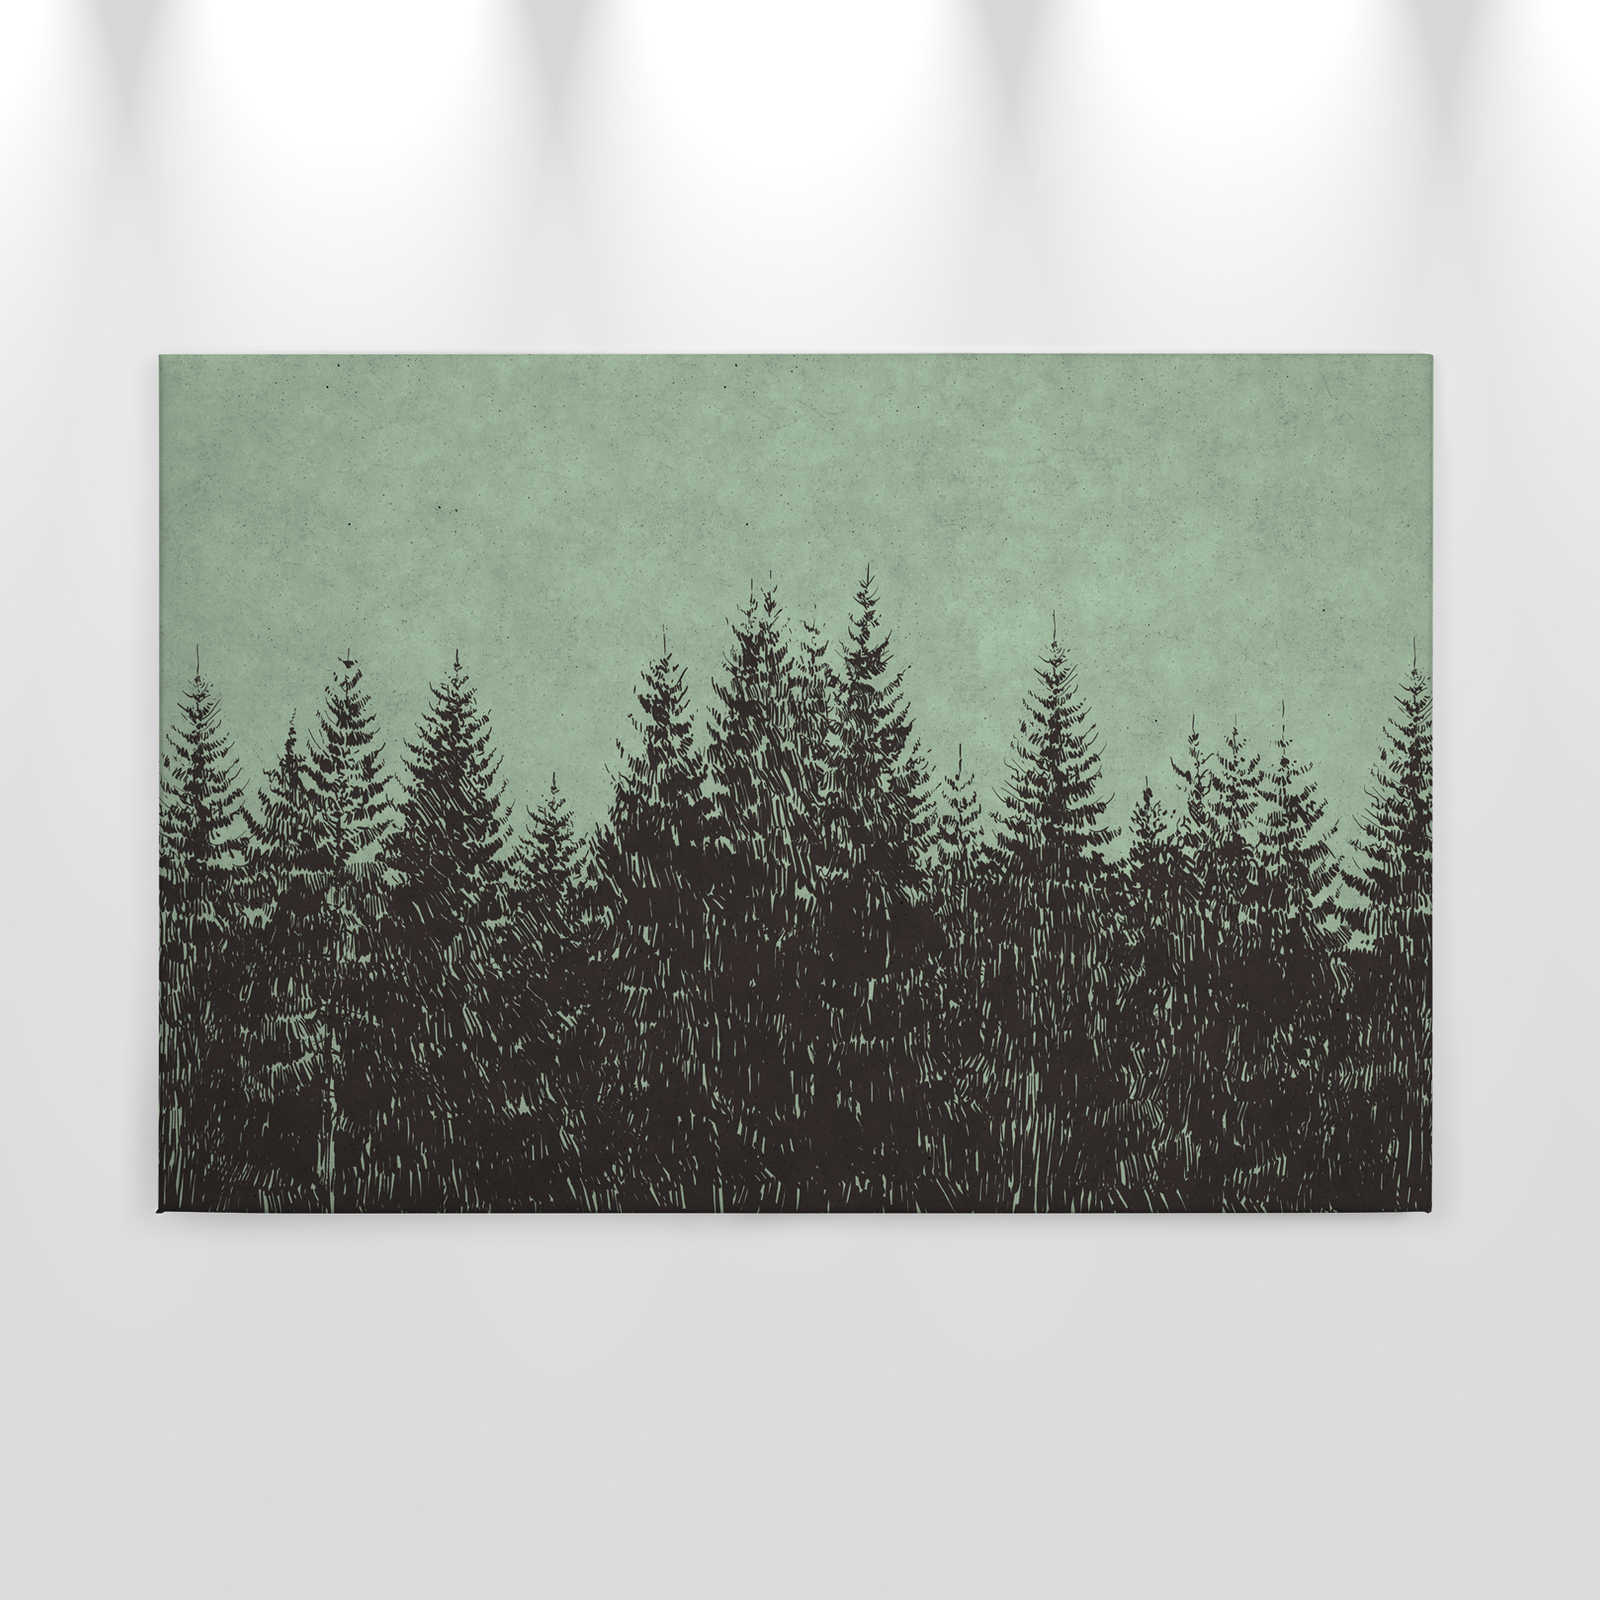             Wald Leinwandbild im Zeichenstil Tannenspitzen – 0,90 m x 0,60 m
        